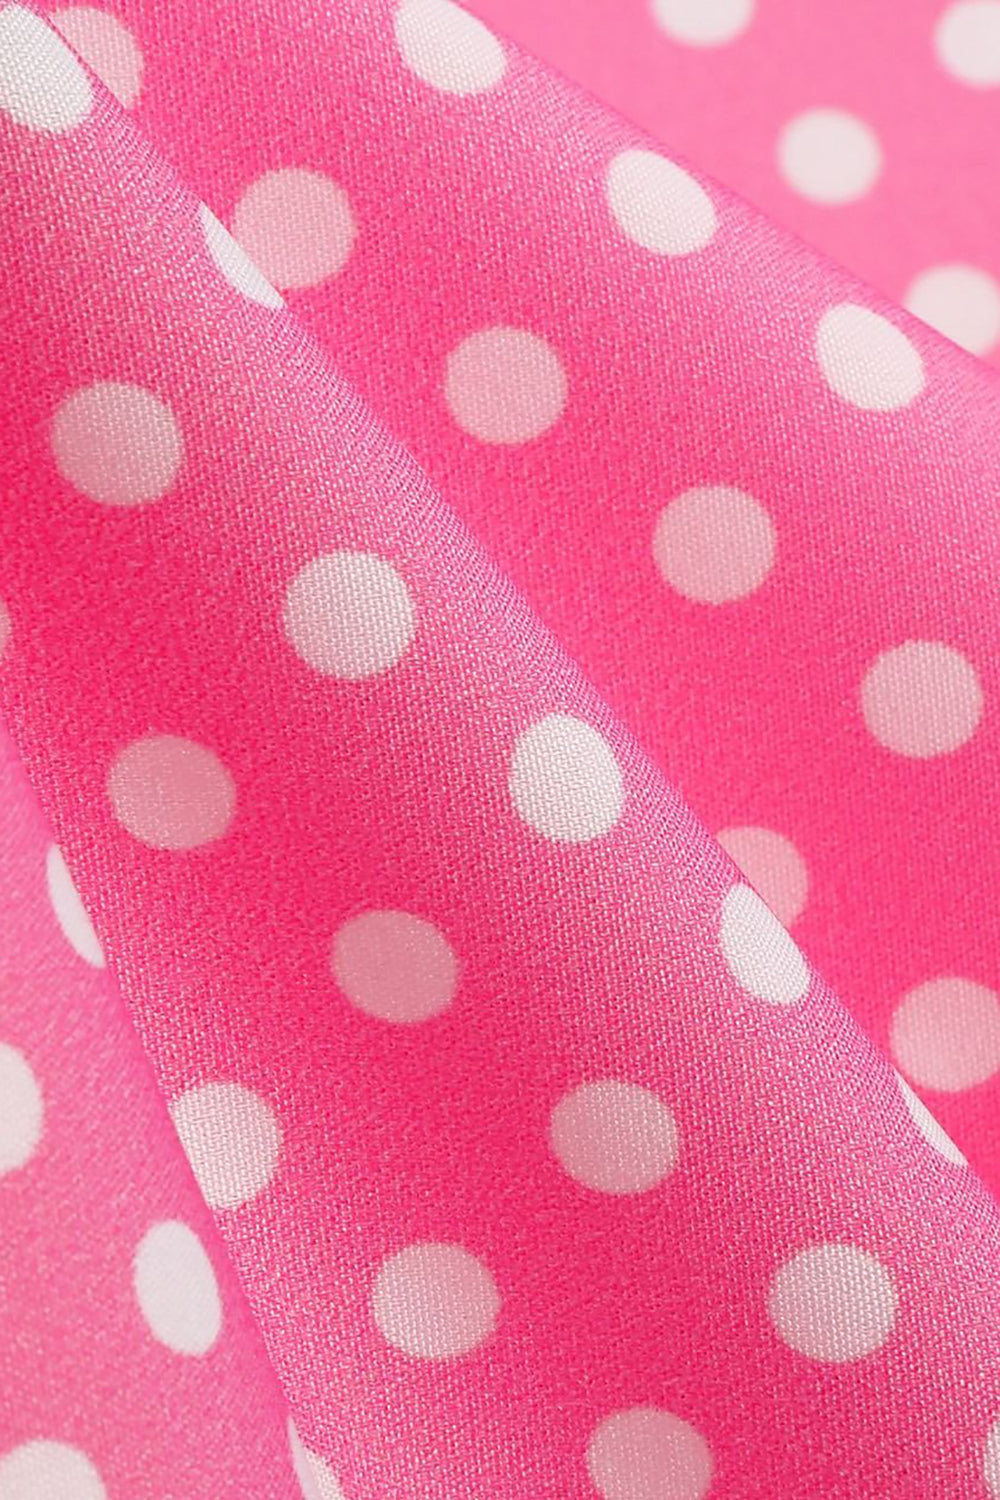 Cold Shoulder Polka Dots Pink 1950s Dress